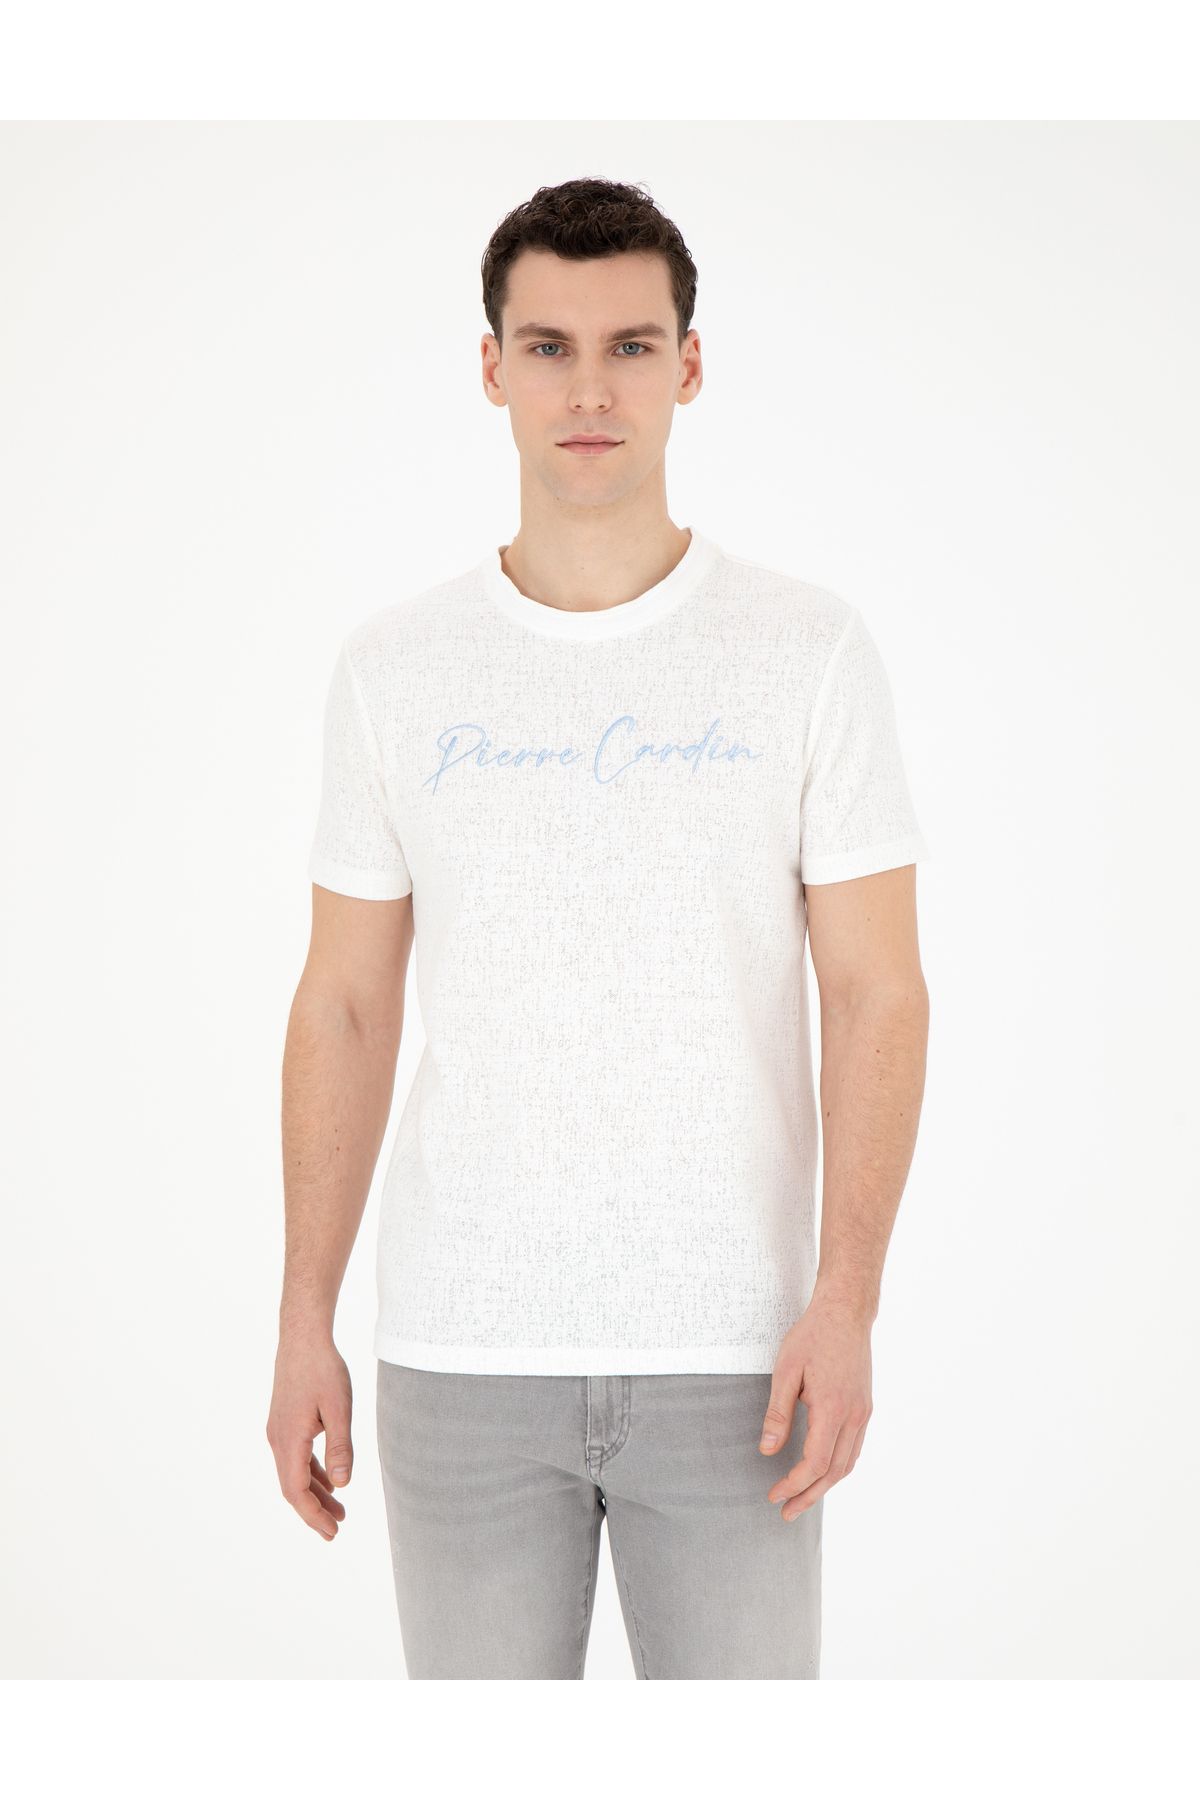 Pierre Cardin Erkek Beyaz Slim Fit Tişört 1857540